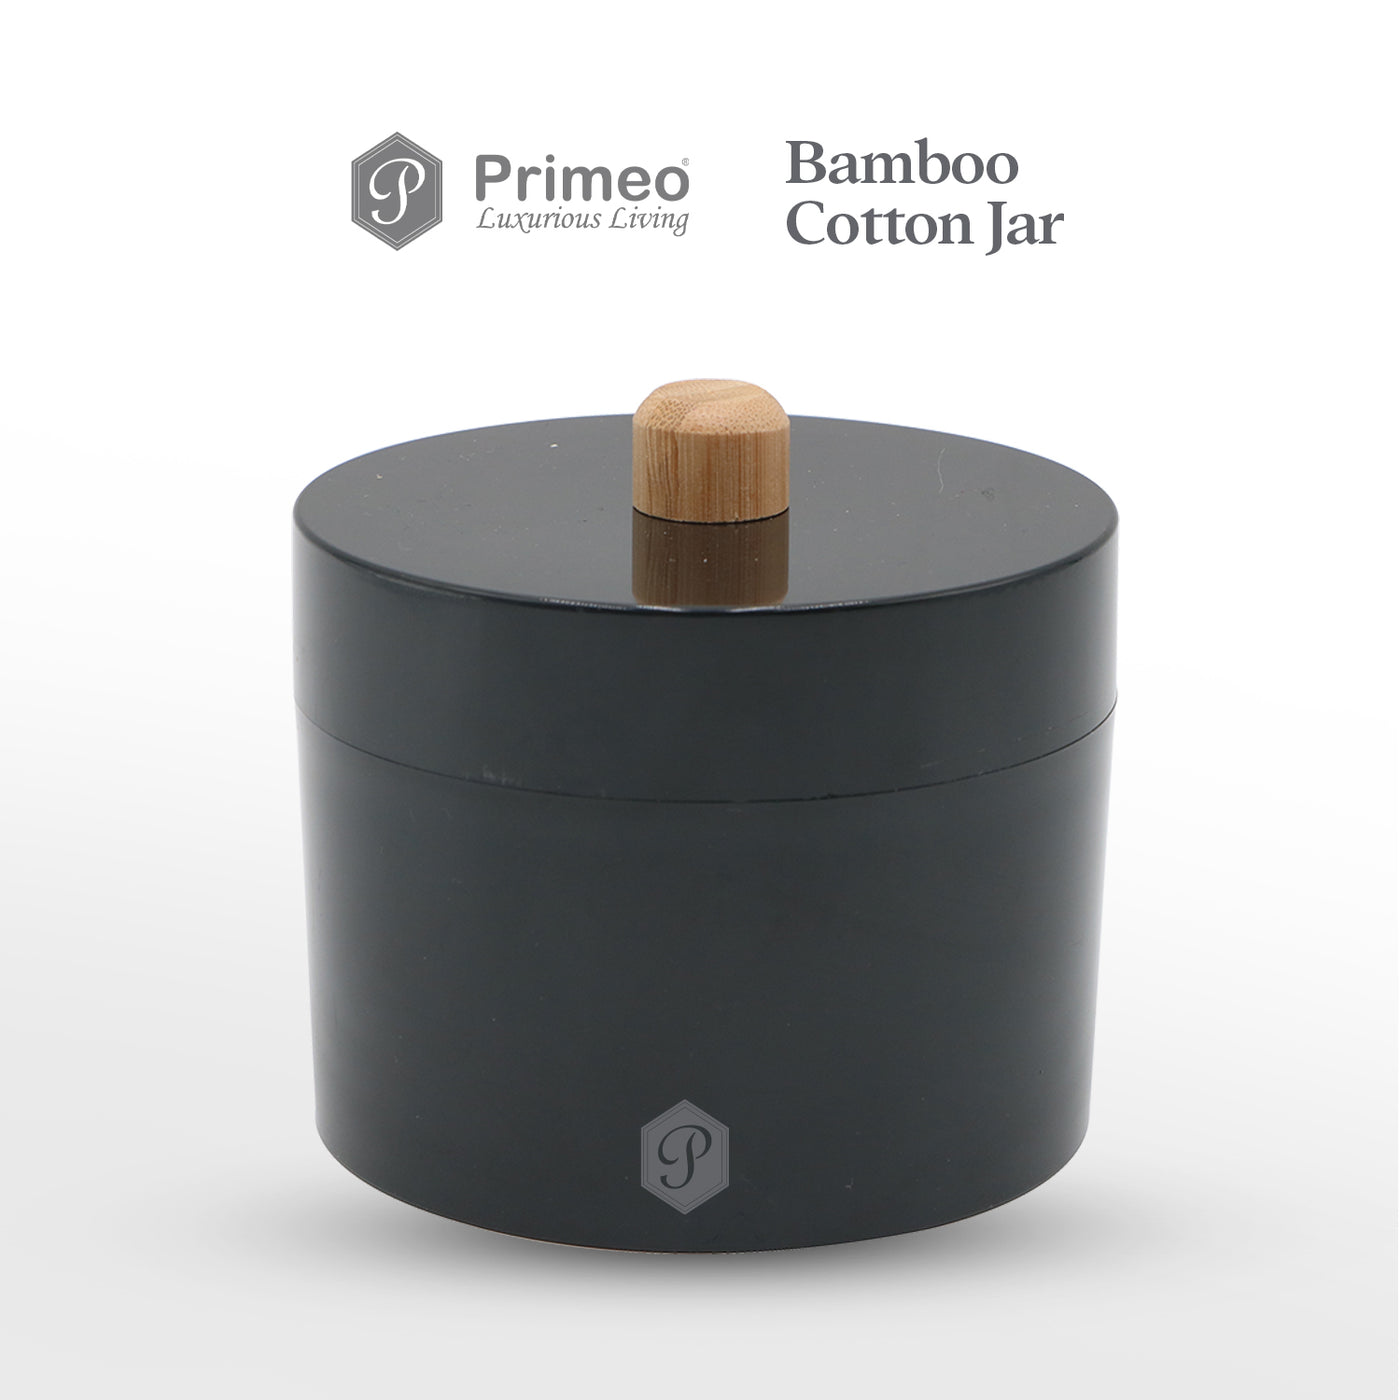 PRIMEO Premium Bamboo Cotton Jar 10.5x10.5x10cm